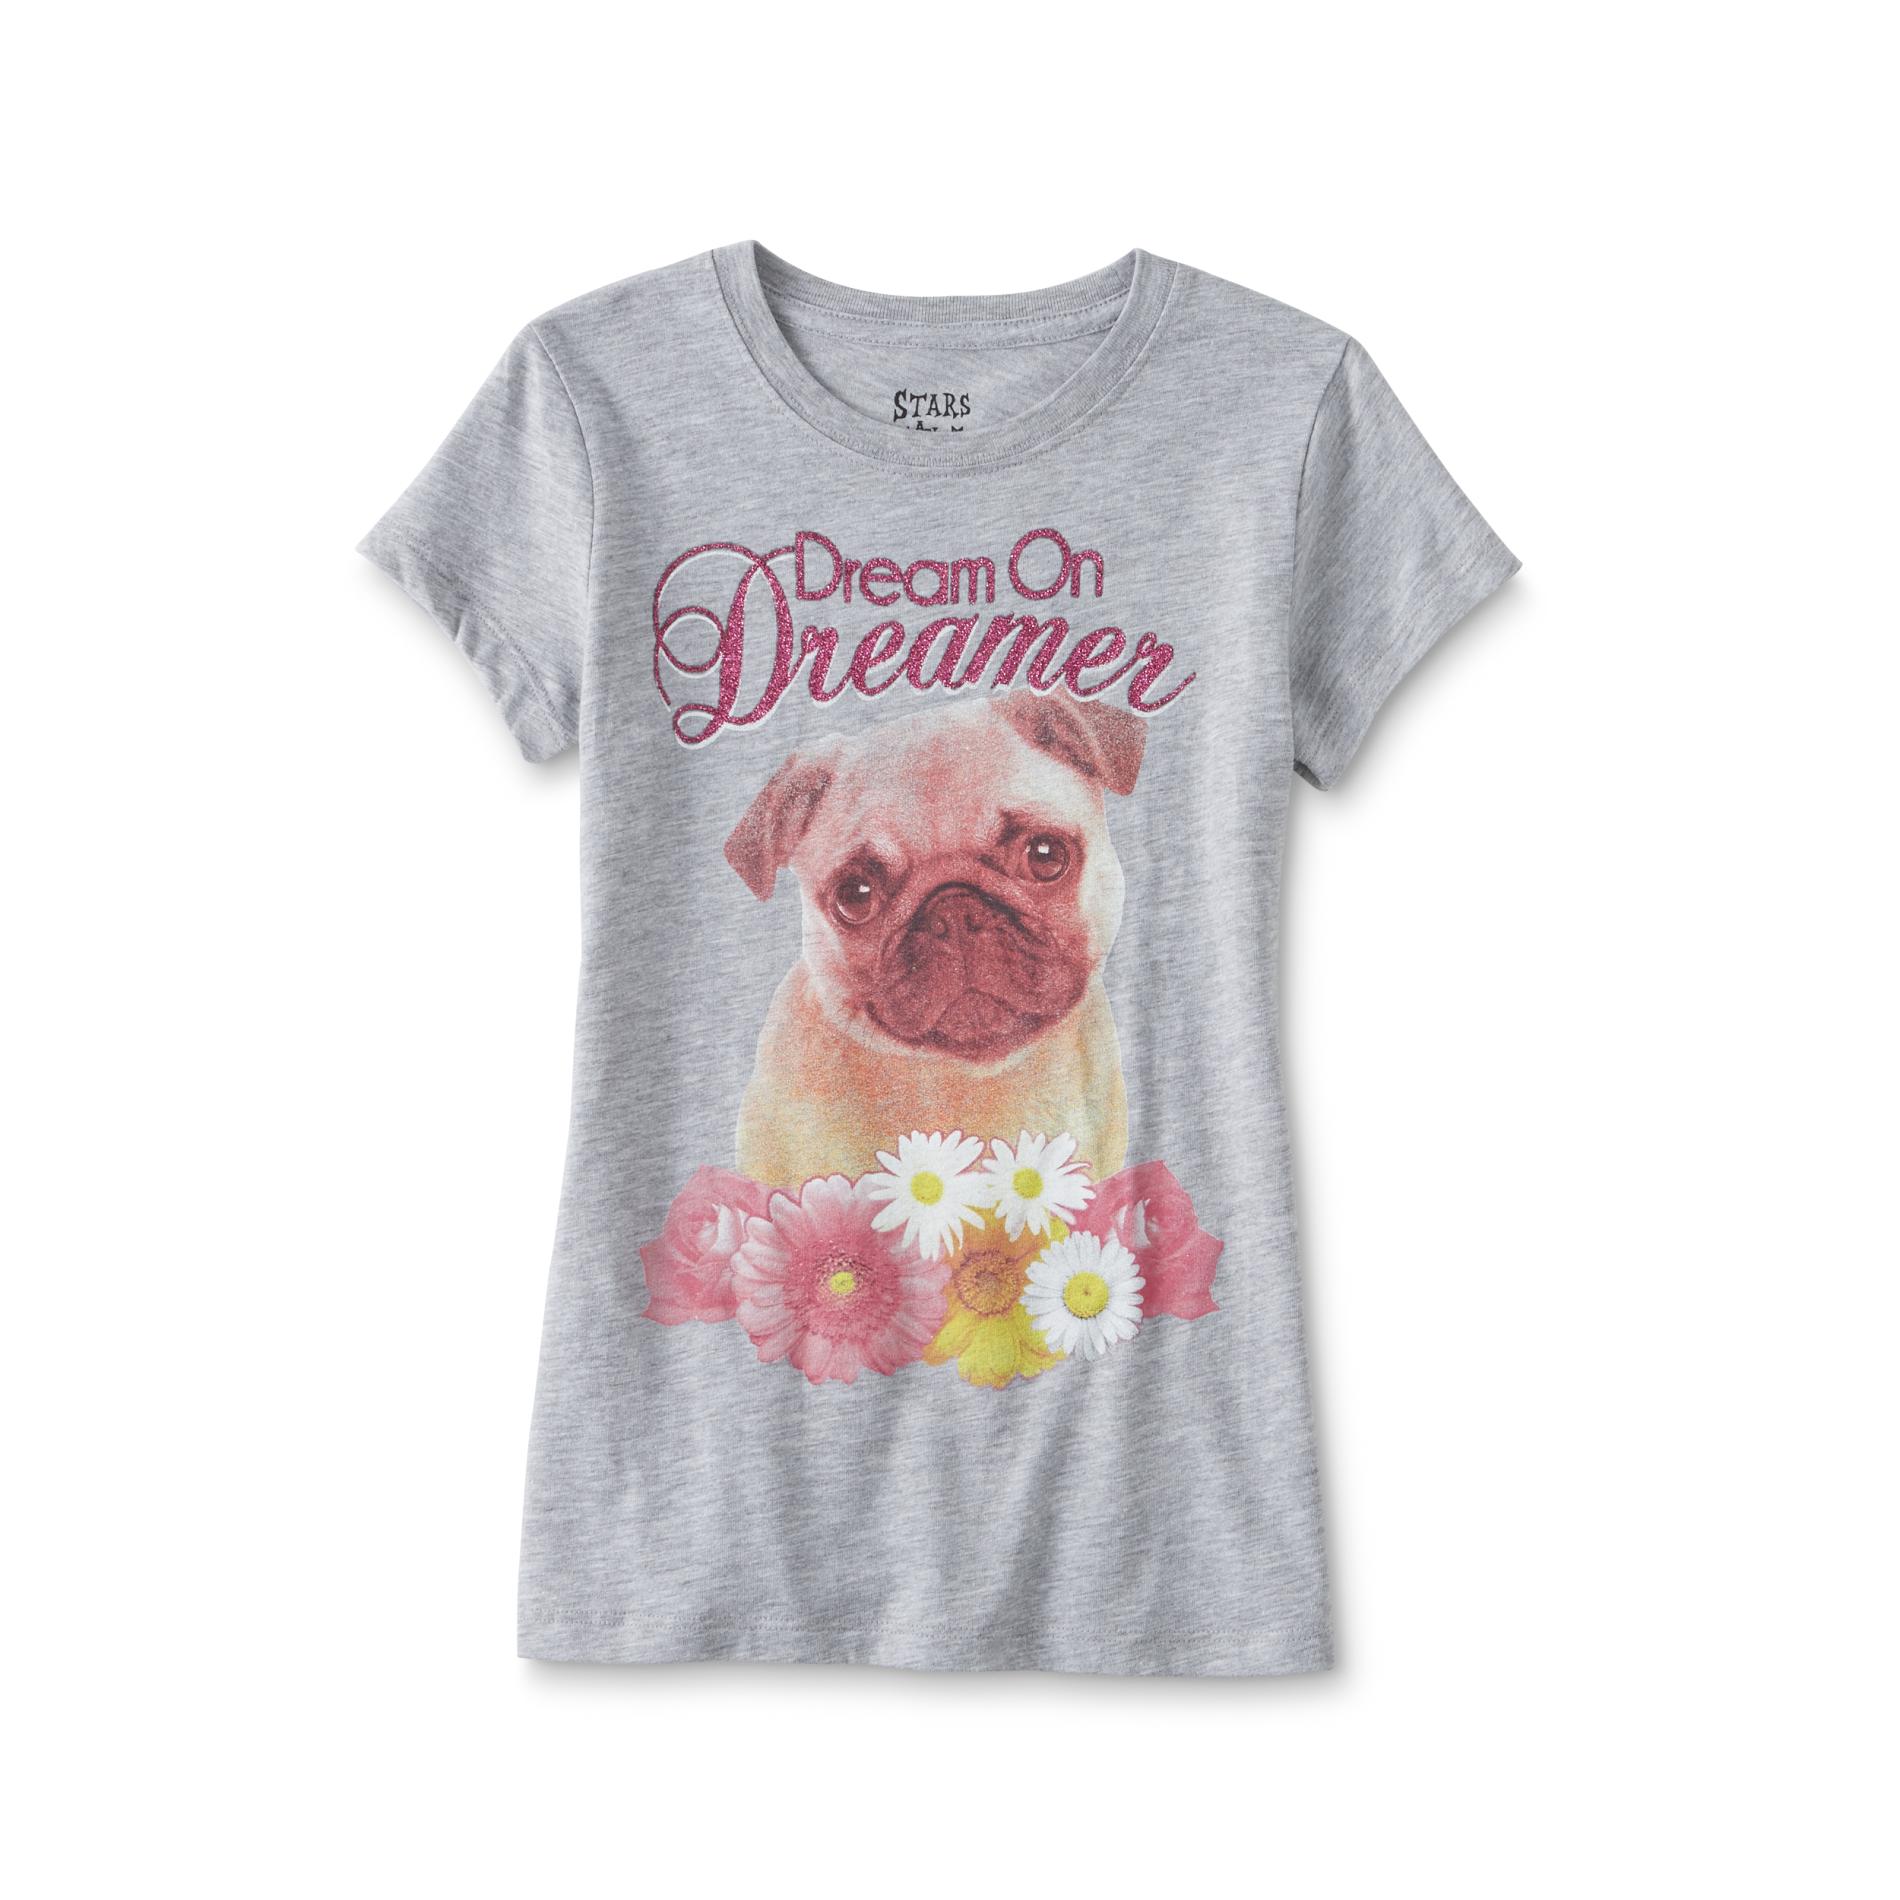 Hybrid Girl's Graphic T-Shirt - Dream On Dreamer